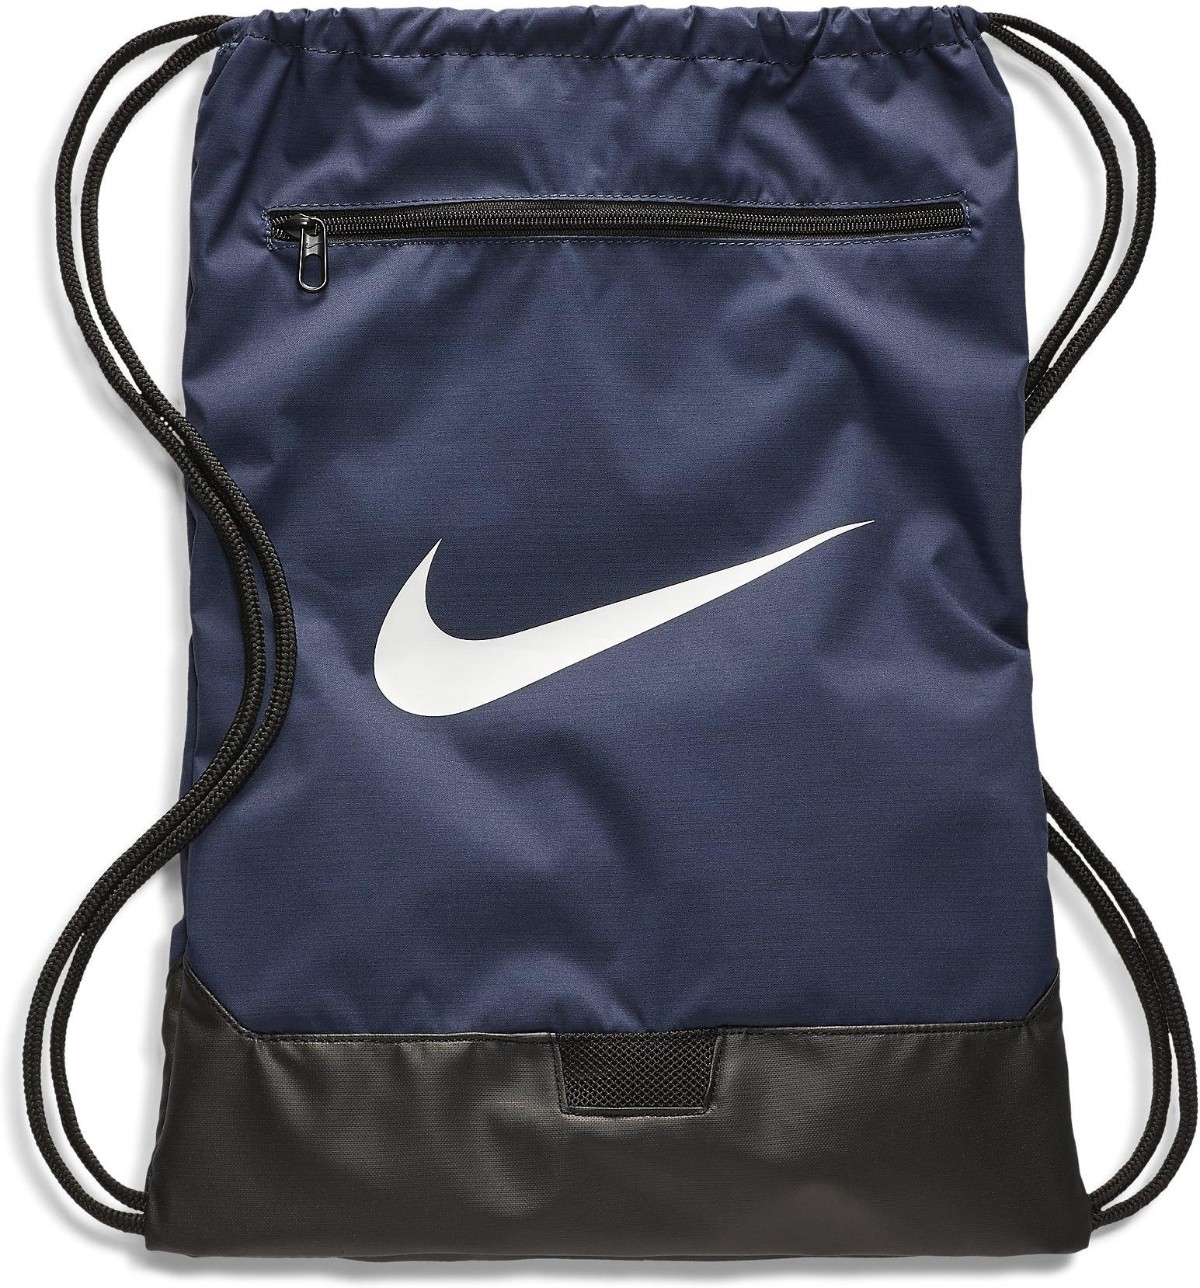 Repetido Si Hobart Nike tiene la bolsa de cuerdas para el gym más vendida en Amazon: calidad  precio difícil de igualar - Economía Digital